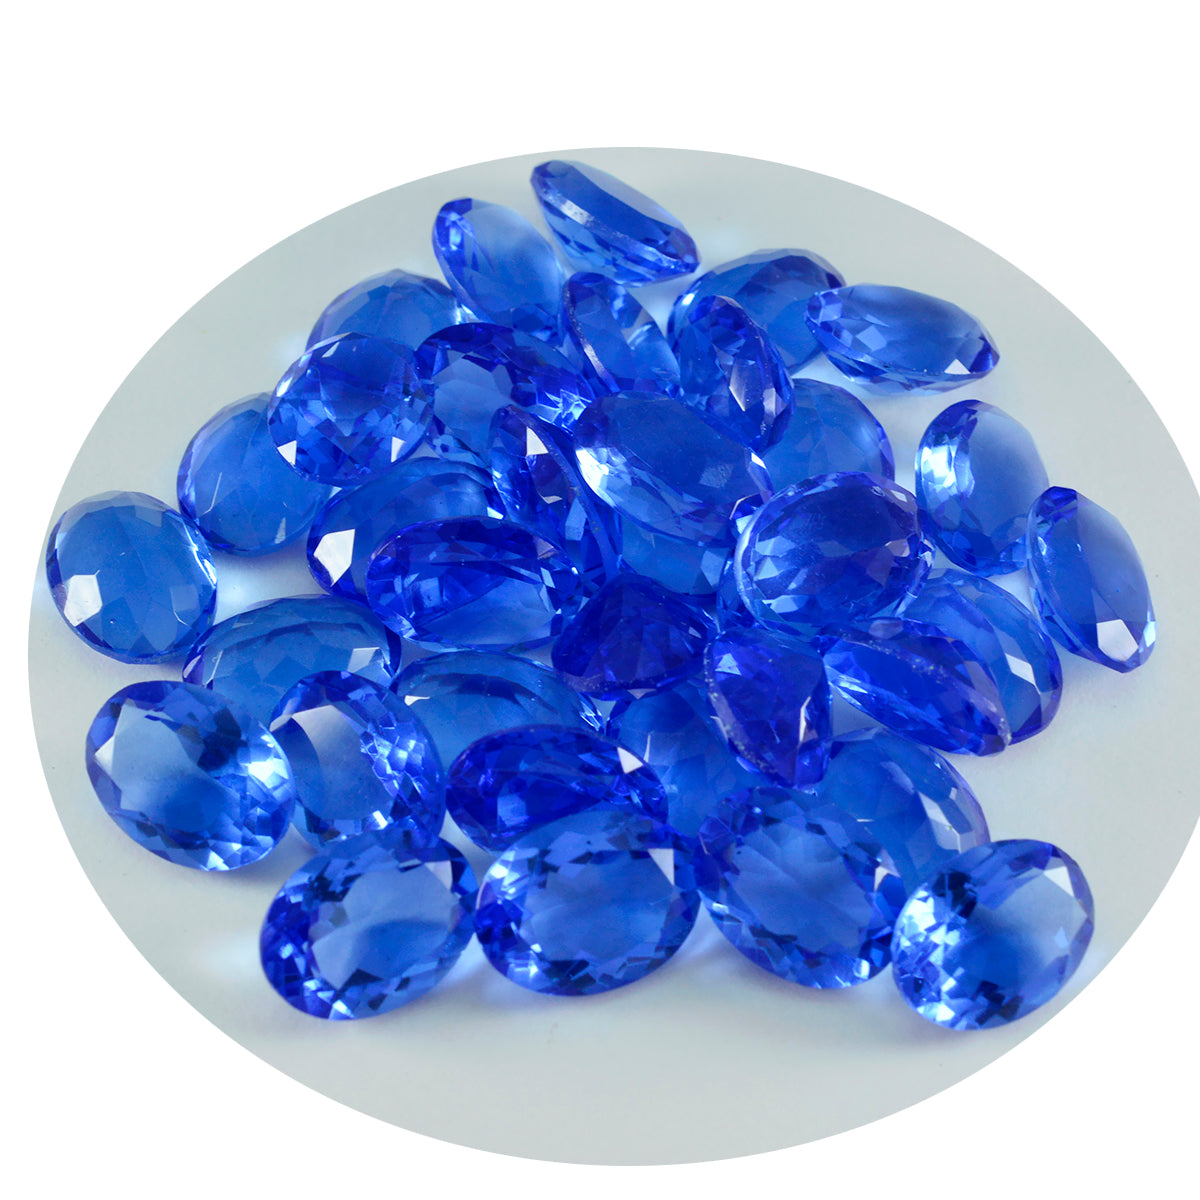 Riyogems 1 Stück blauer Saphir, CZ, facettiert, 9 x 11 mm, ovale Form, schöner Qualitätsedelstein